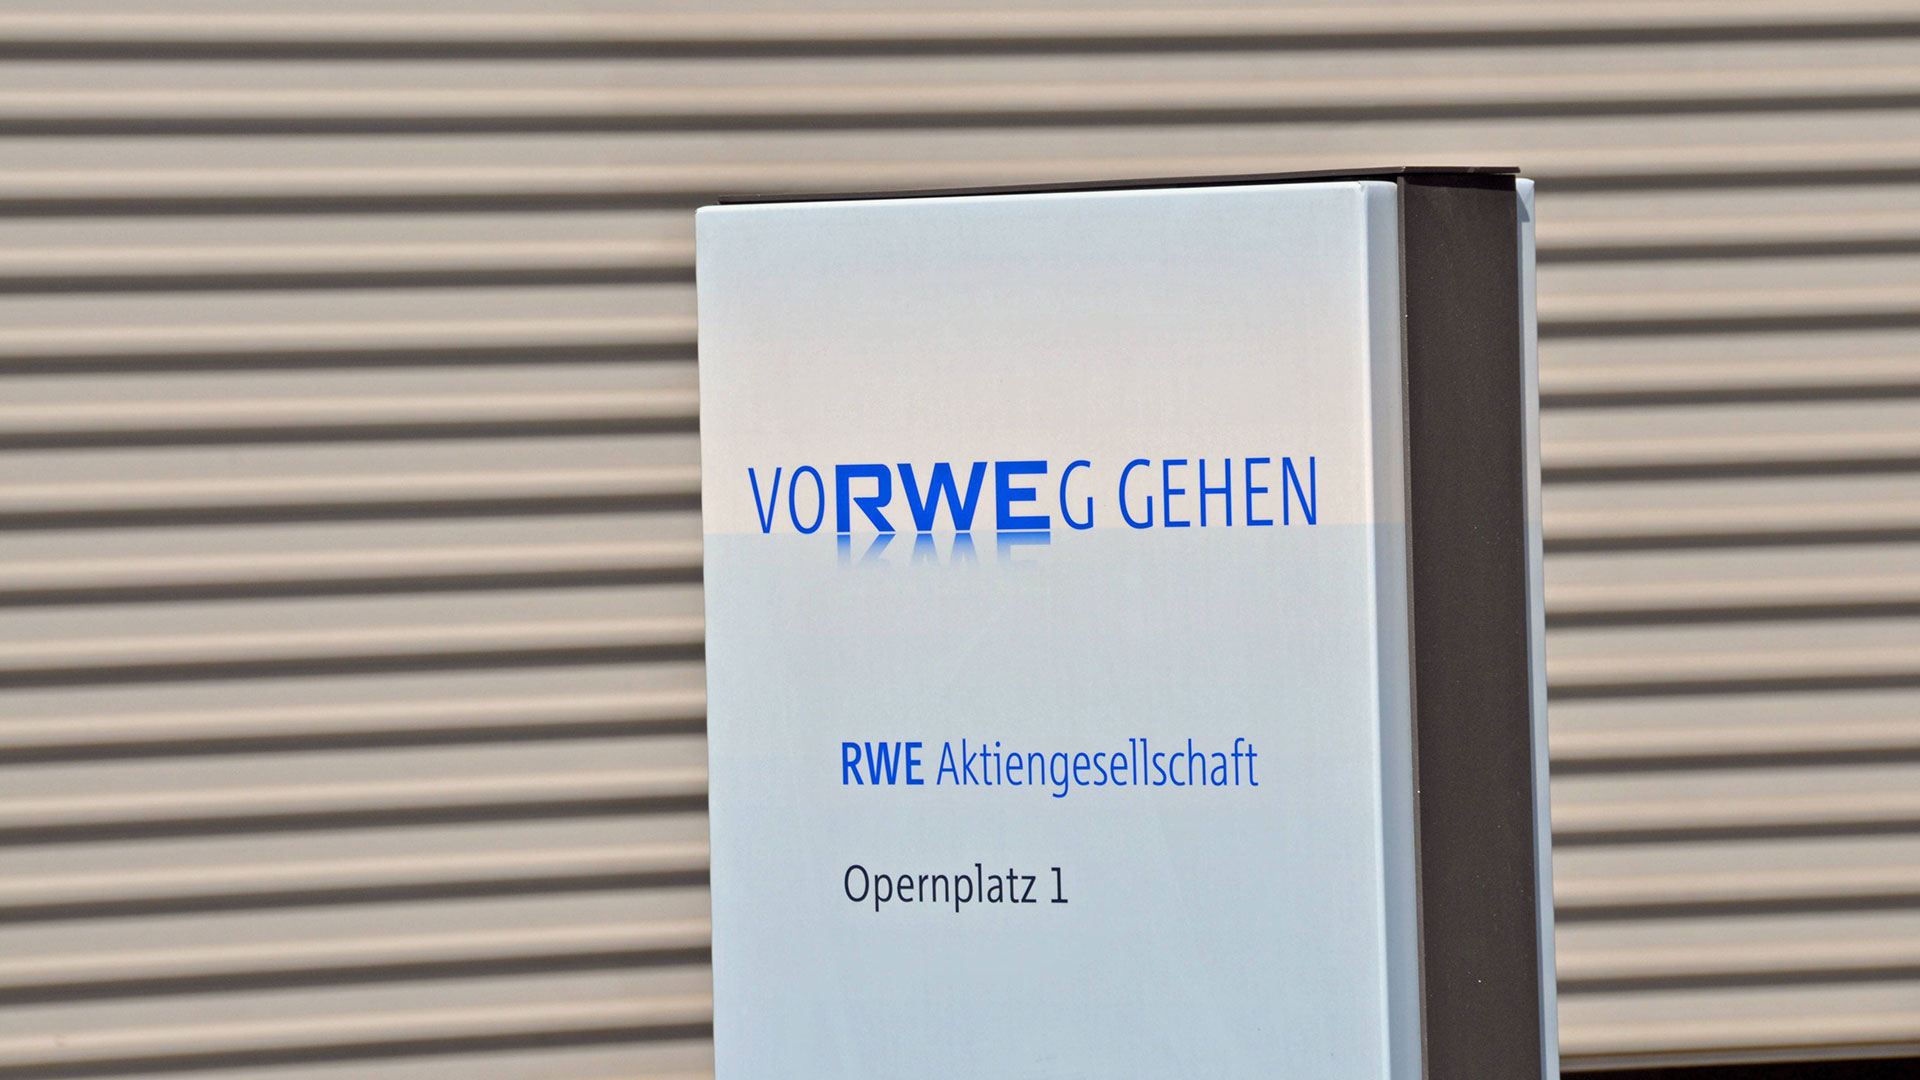 RWE&#8209;Aktie mit Übernahme&#8209;Gerücht im Aufwind: RWE bald spanisch? (Foto: Shutterstock)